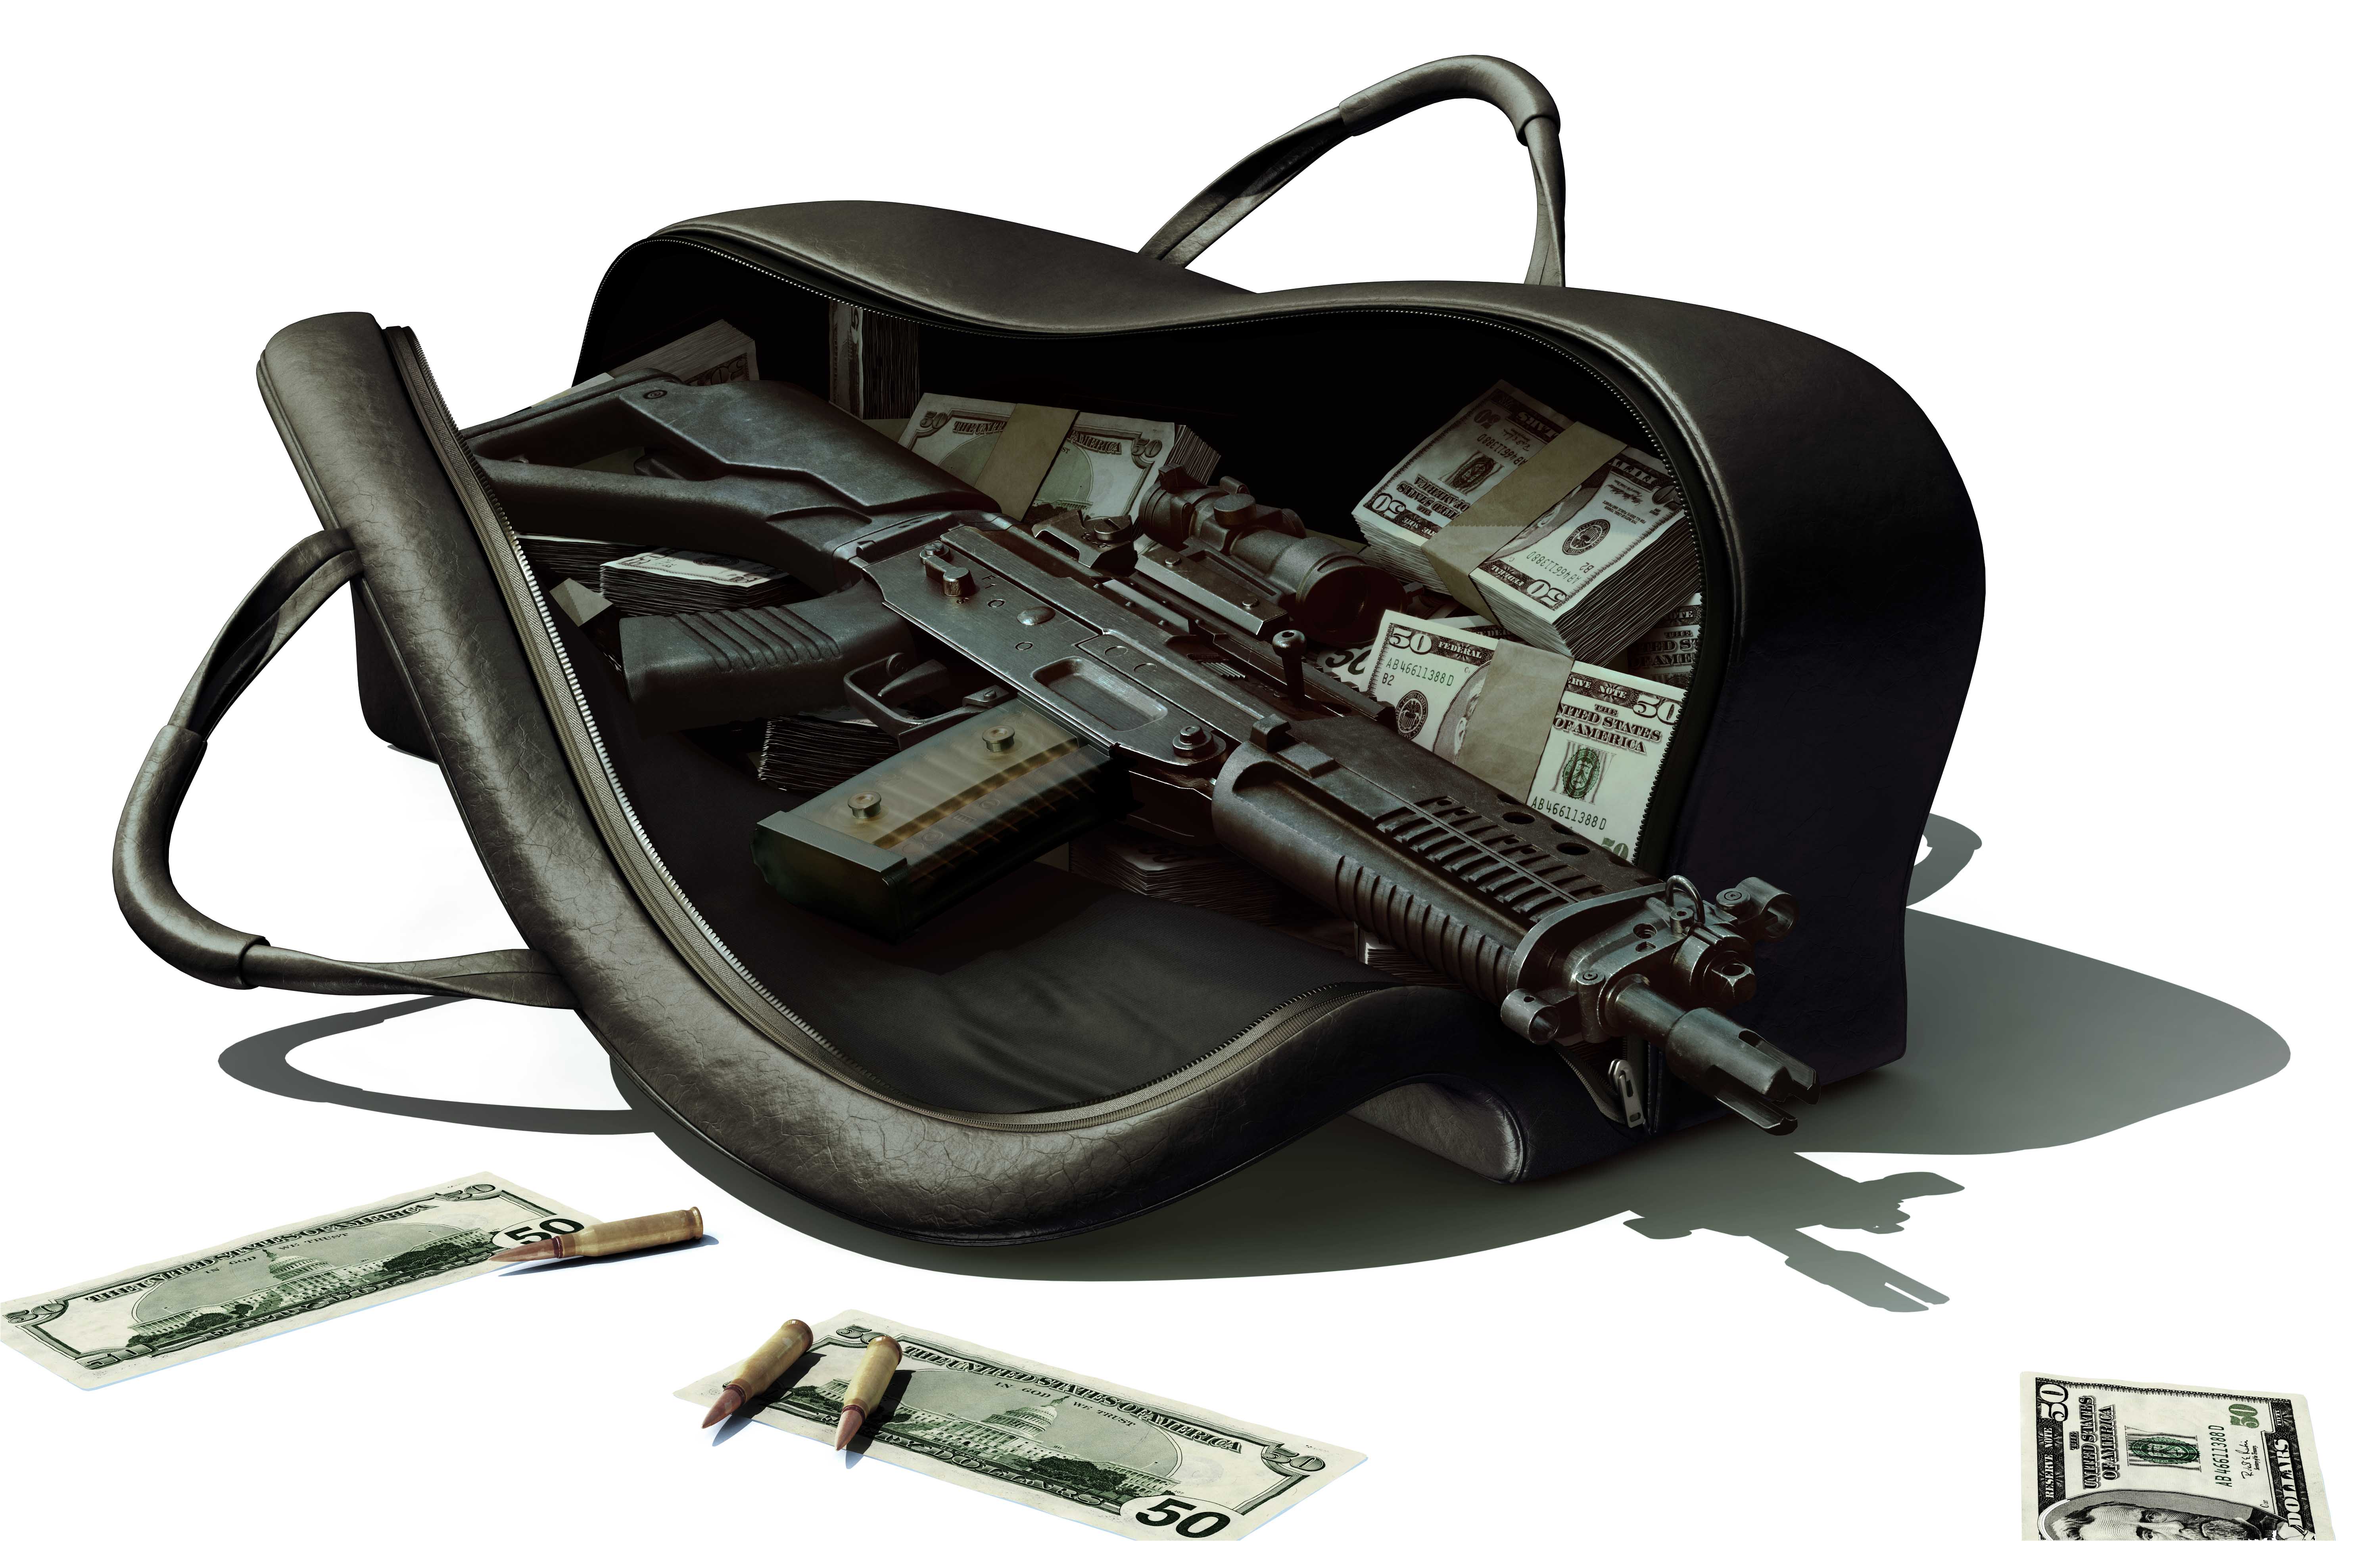 винтовки, пистолеты, деньги, оружие, гангстер - обои на рабочий стол